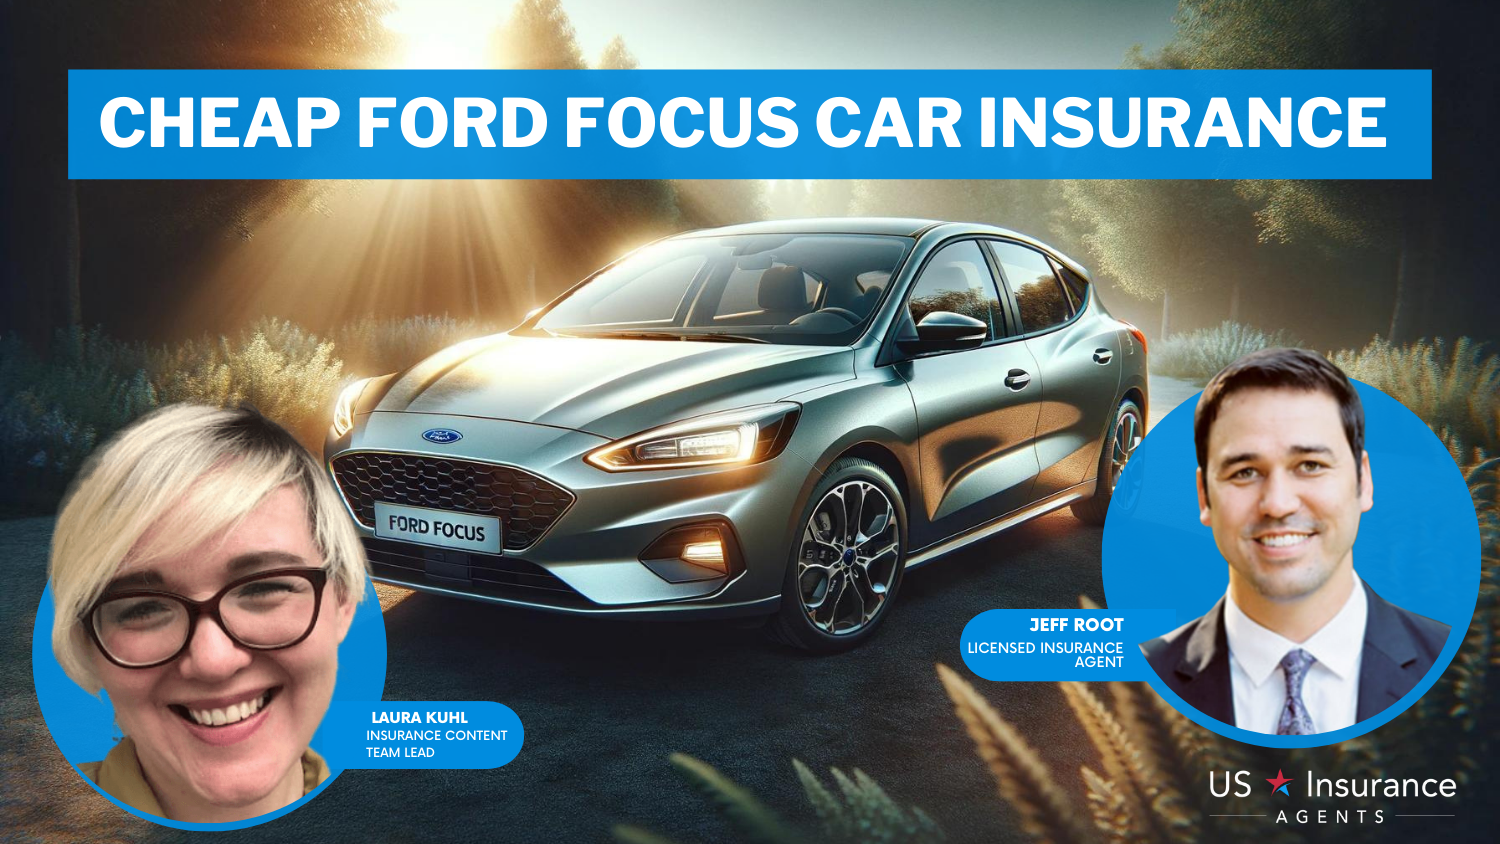 Cheap Ford Focus Car Insurance: Progressive, Erie, and AIG